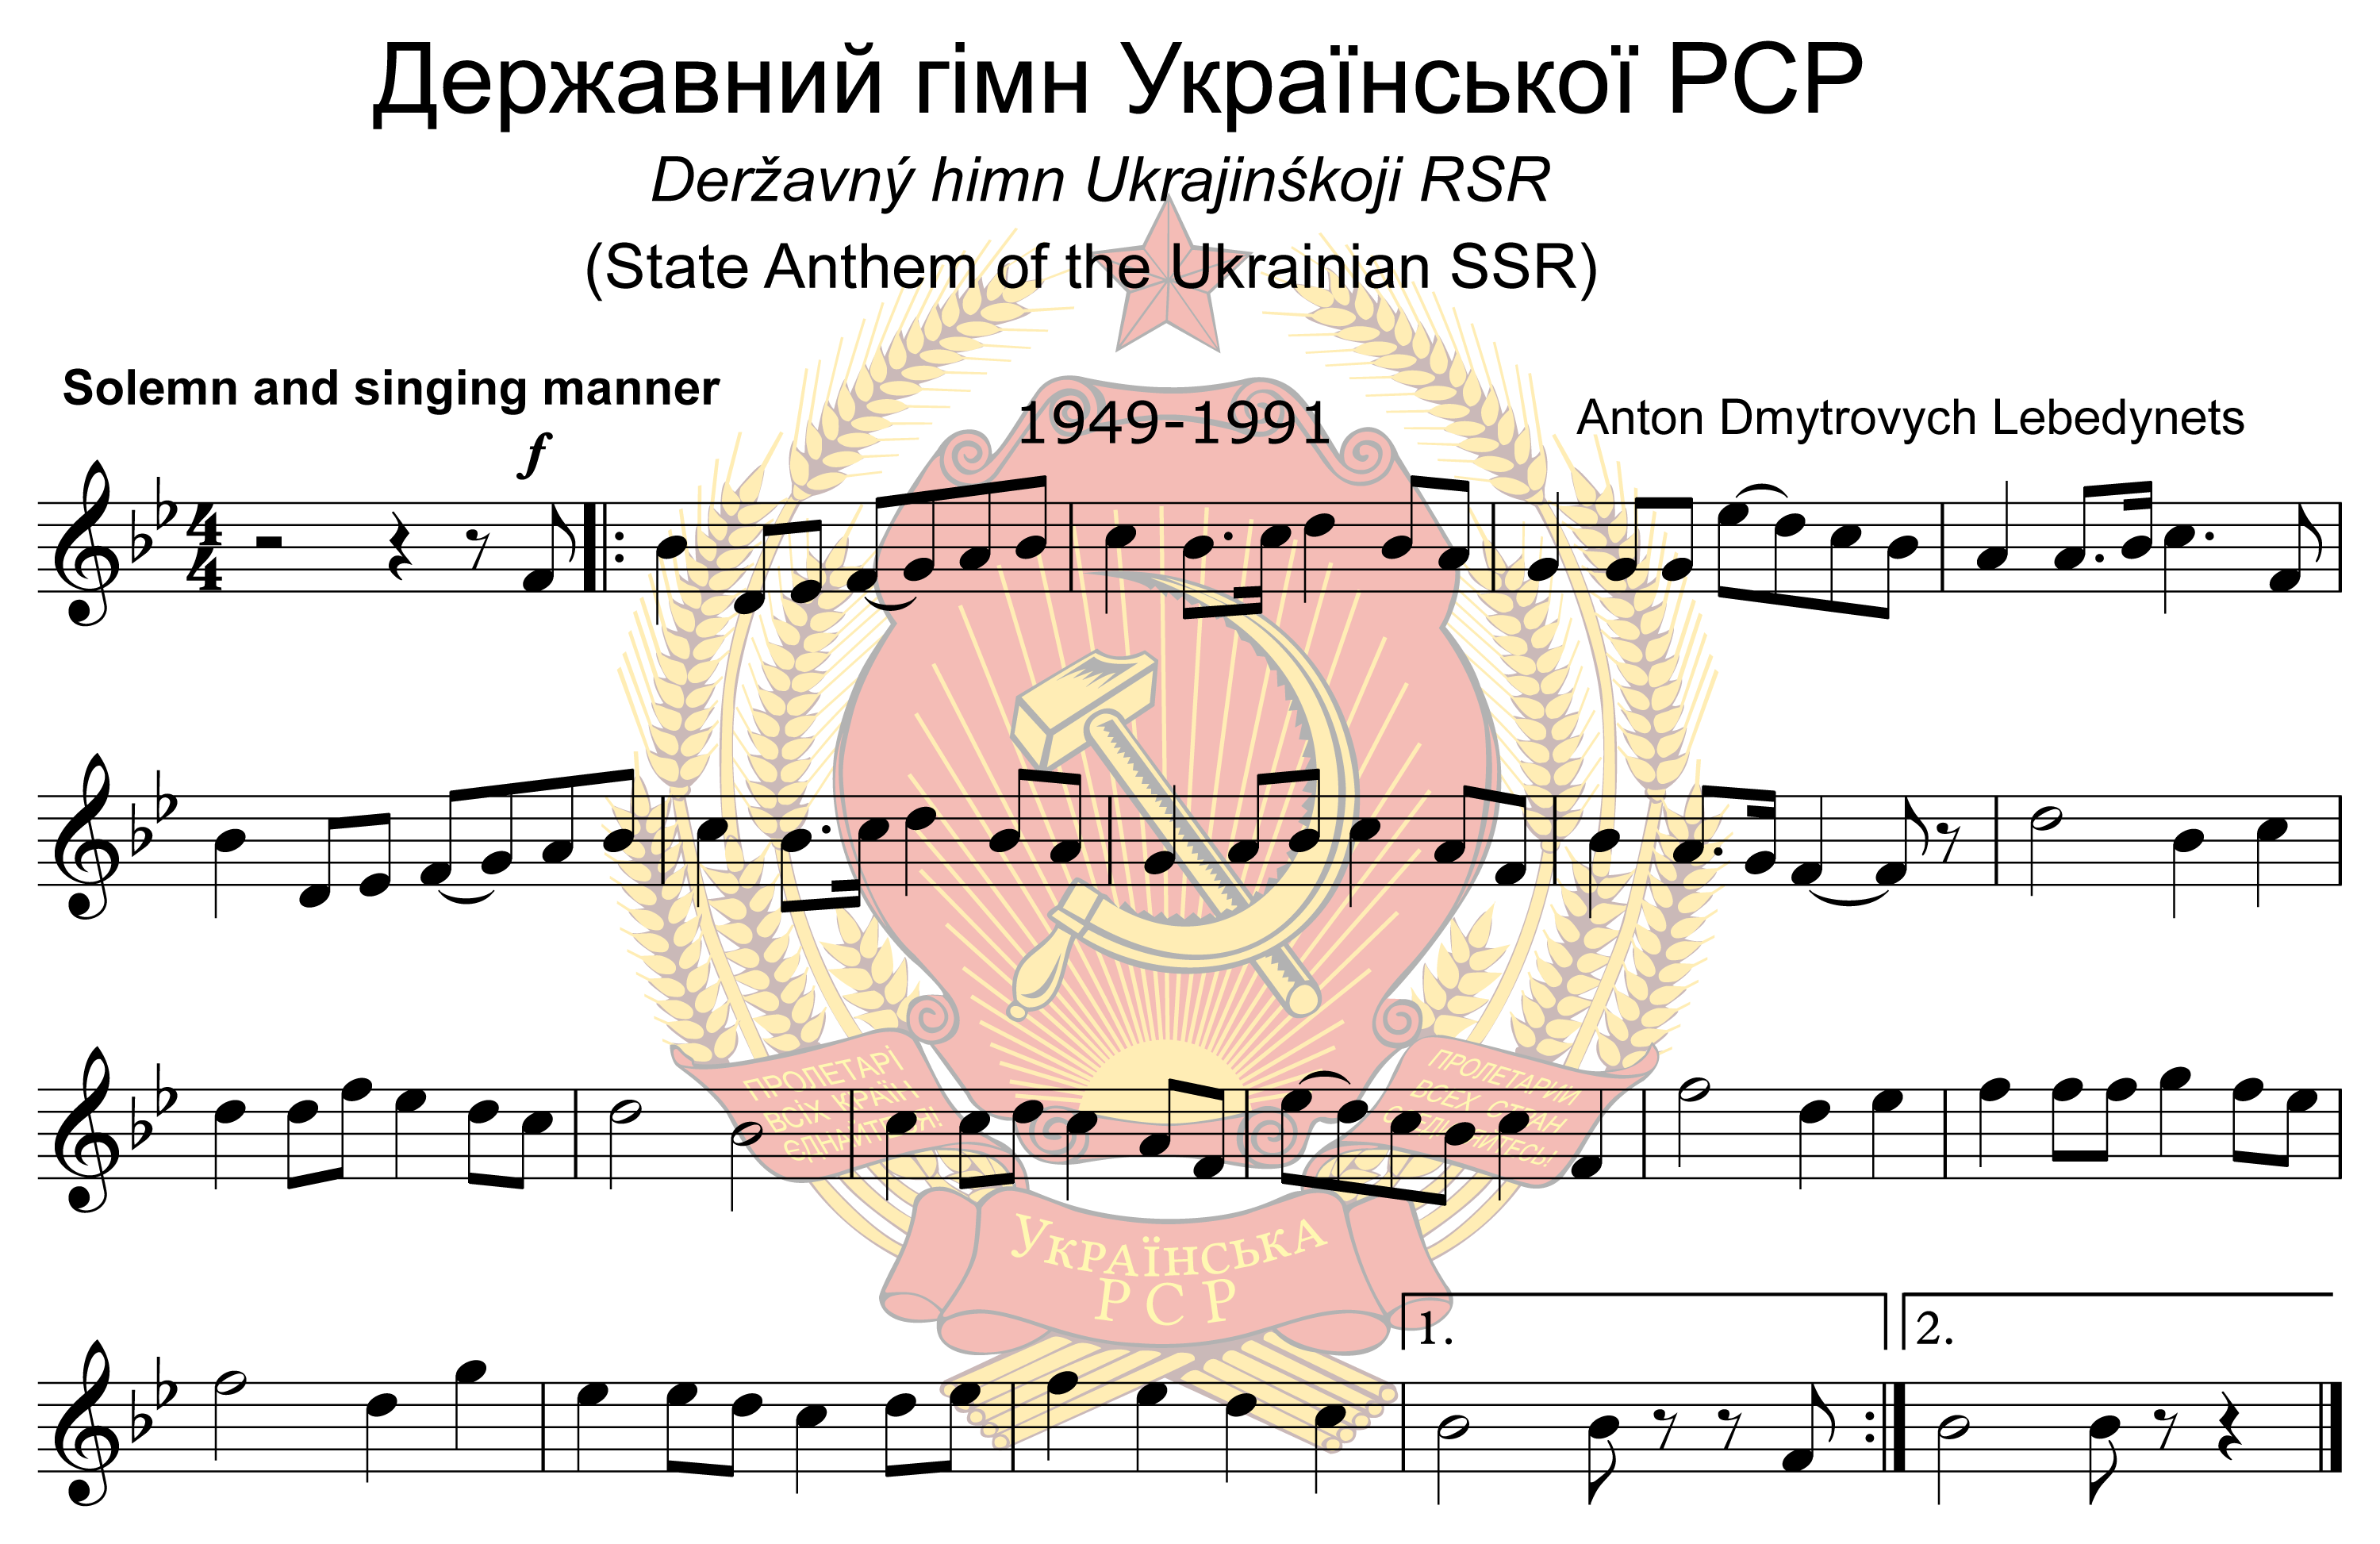 烏克蘭蘇維埃社會主義共和國國歌